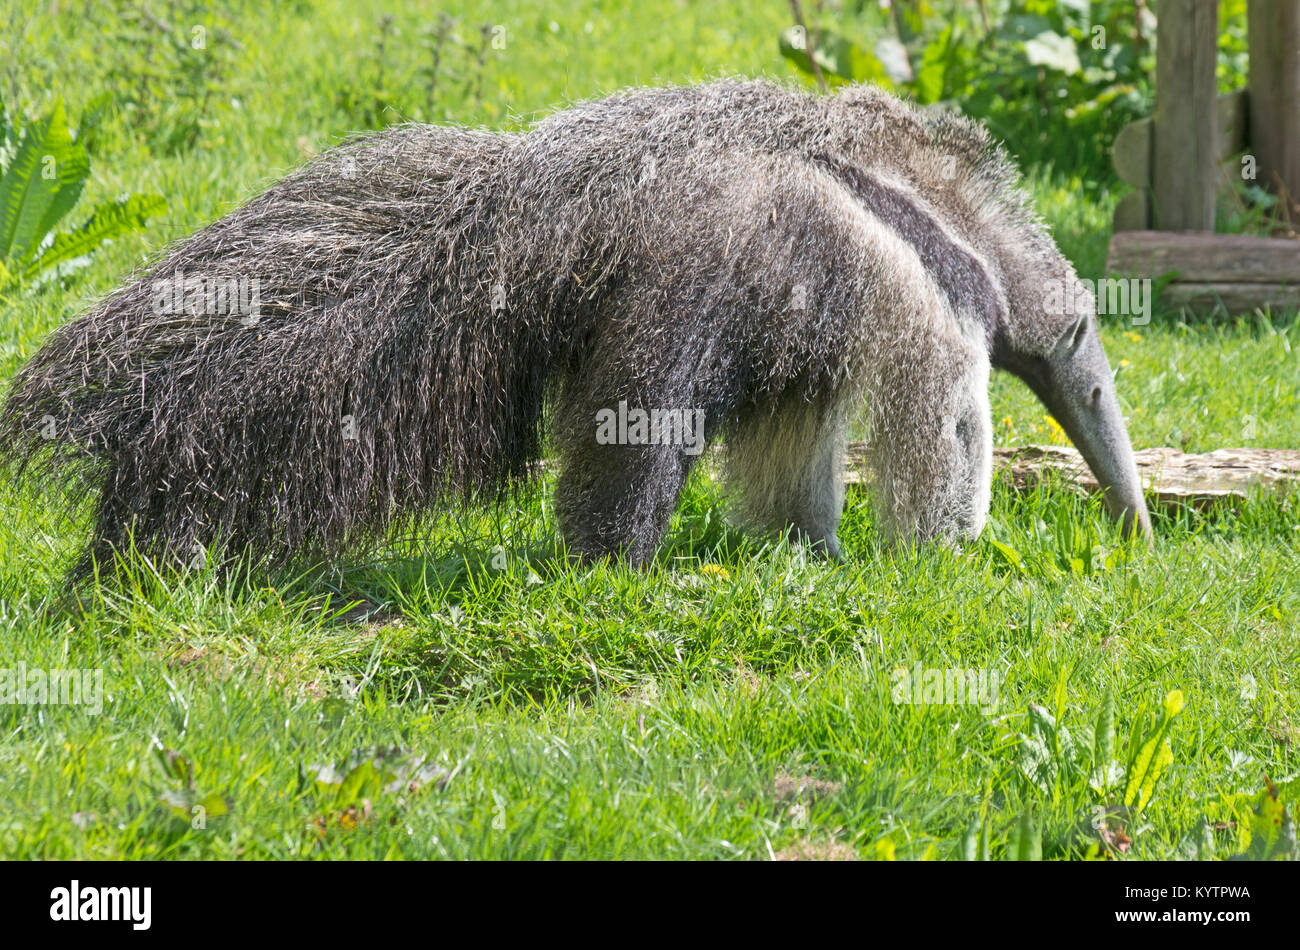 Giant Anteater, Myrmecophaga Tridactyla; South America, Captive, Stock Photo